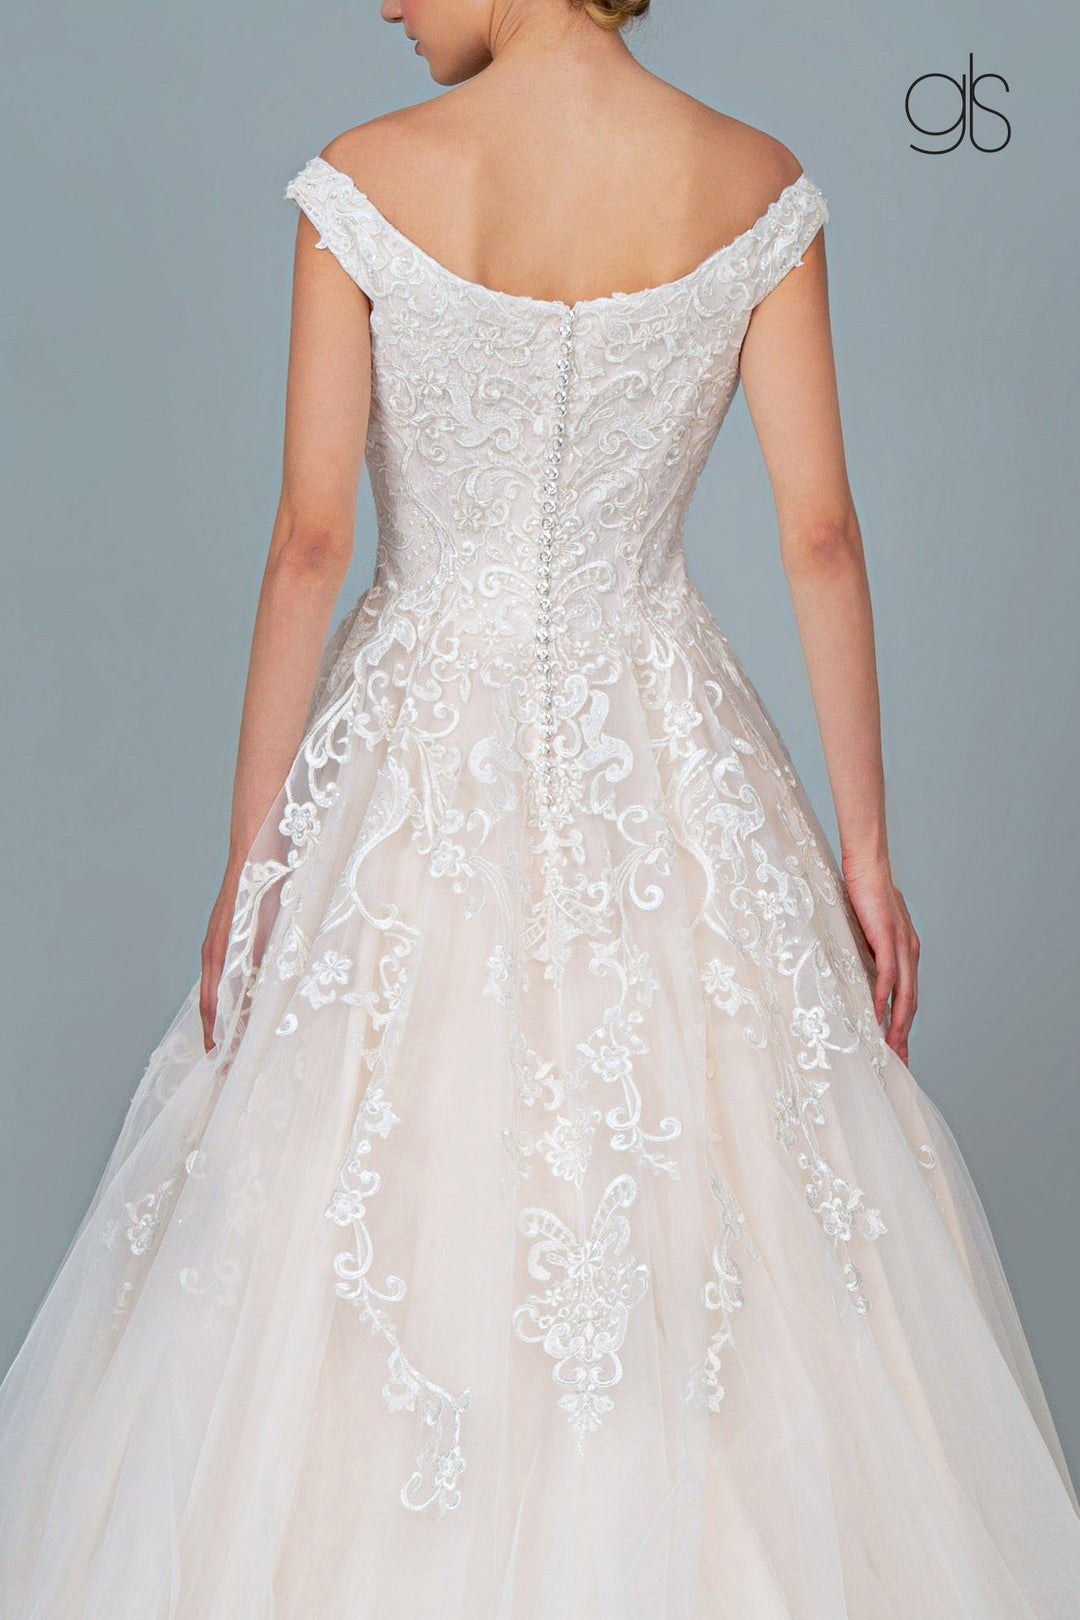 Applique Long Off Shoulder Wedding Dress by Elizabeth K GL1800